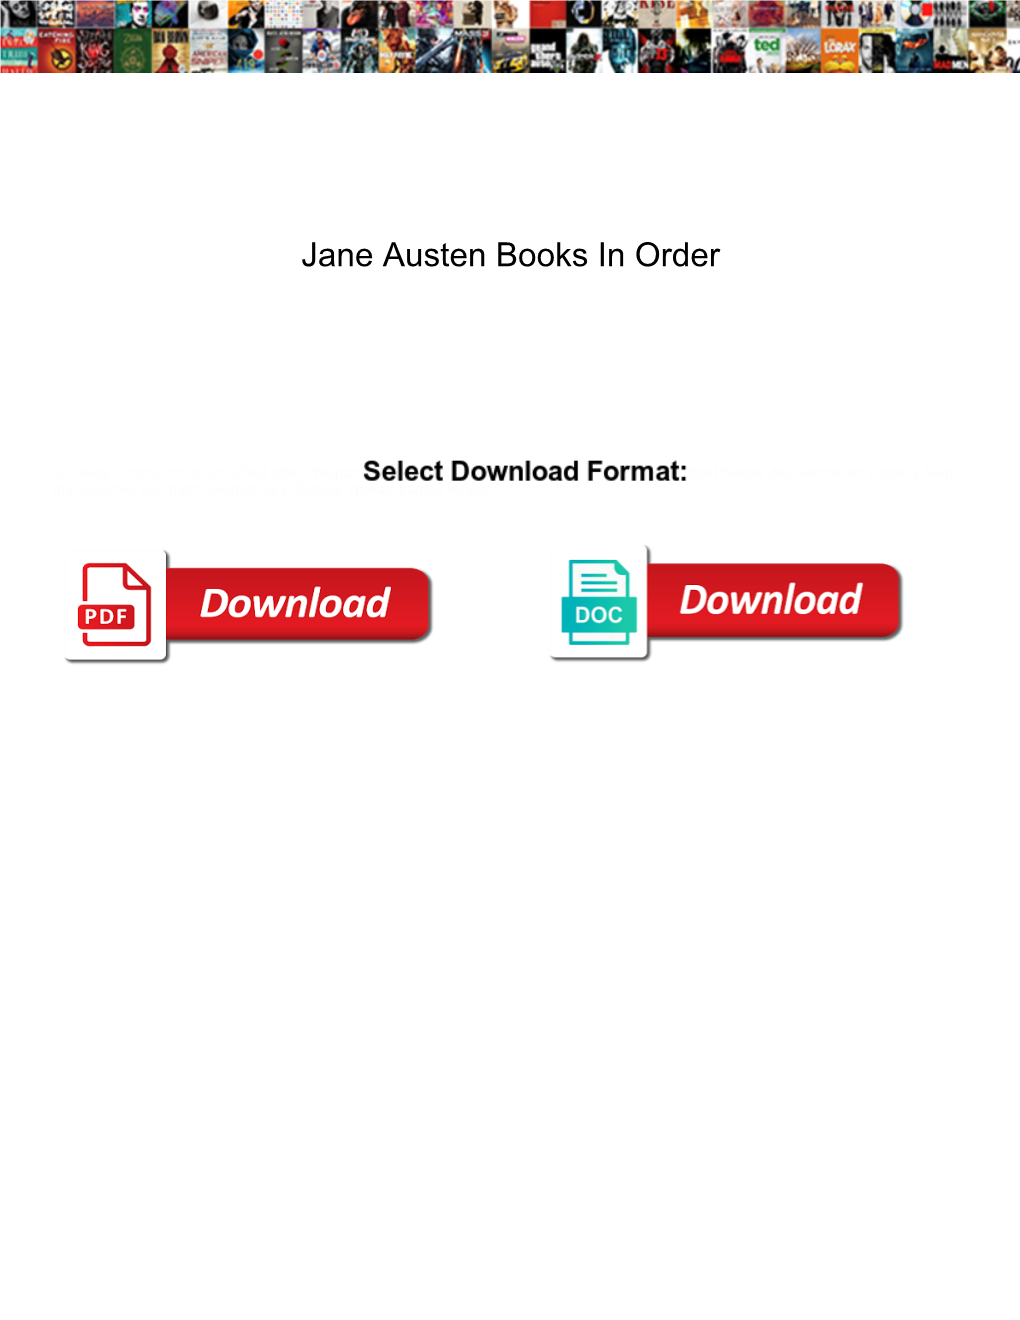 Jane Austen Books in Order